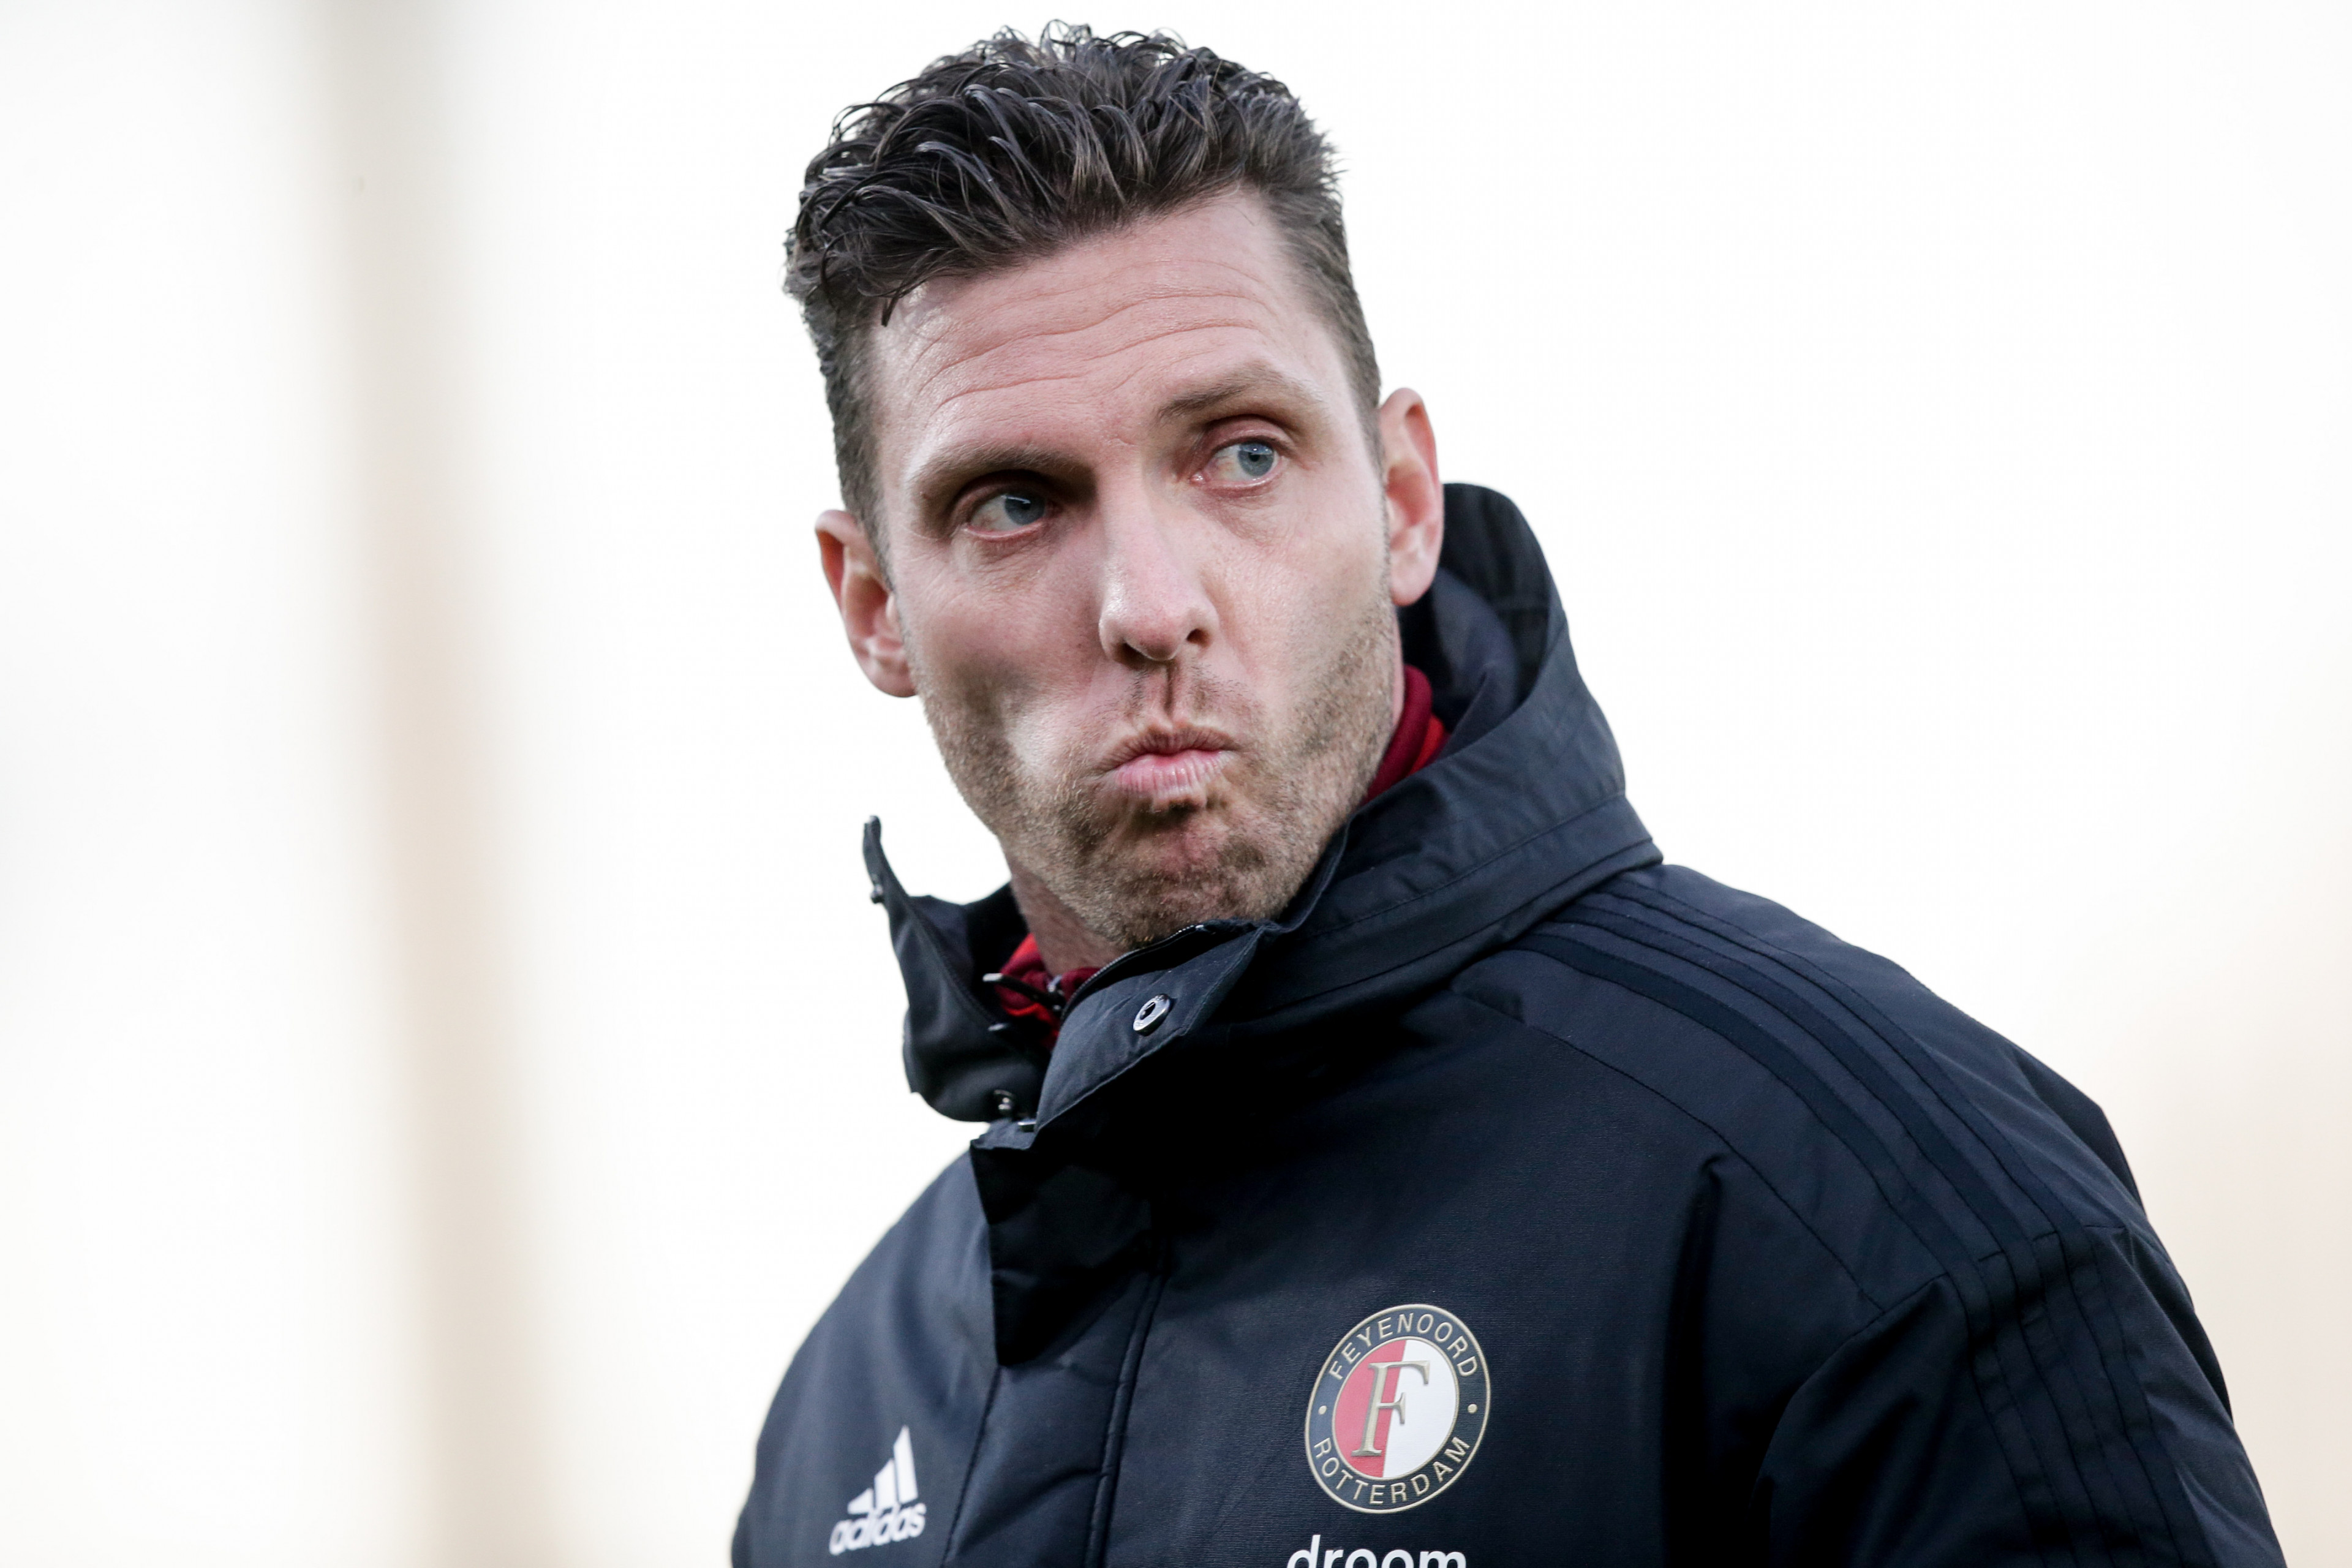 "Ik hoop dat de KNVB inziet dat Jong Feyenoord in de KKD moet spelen"